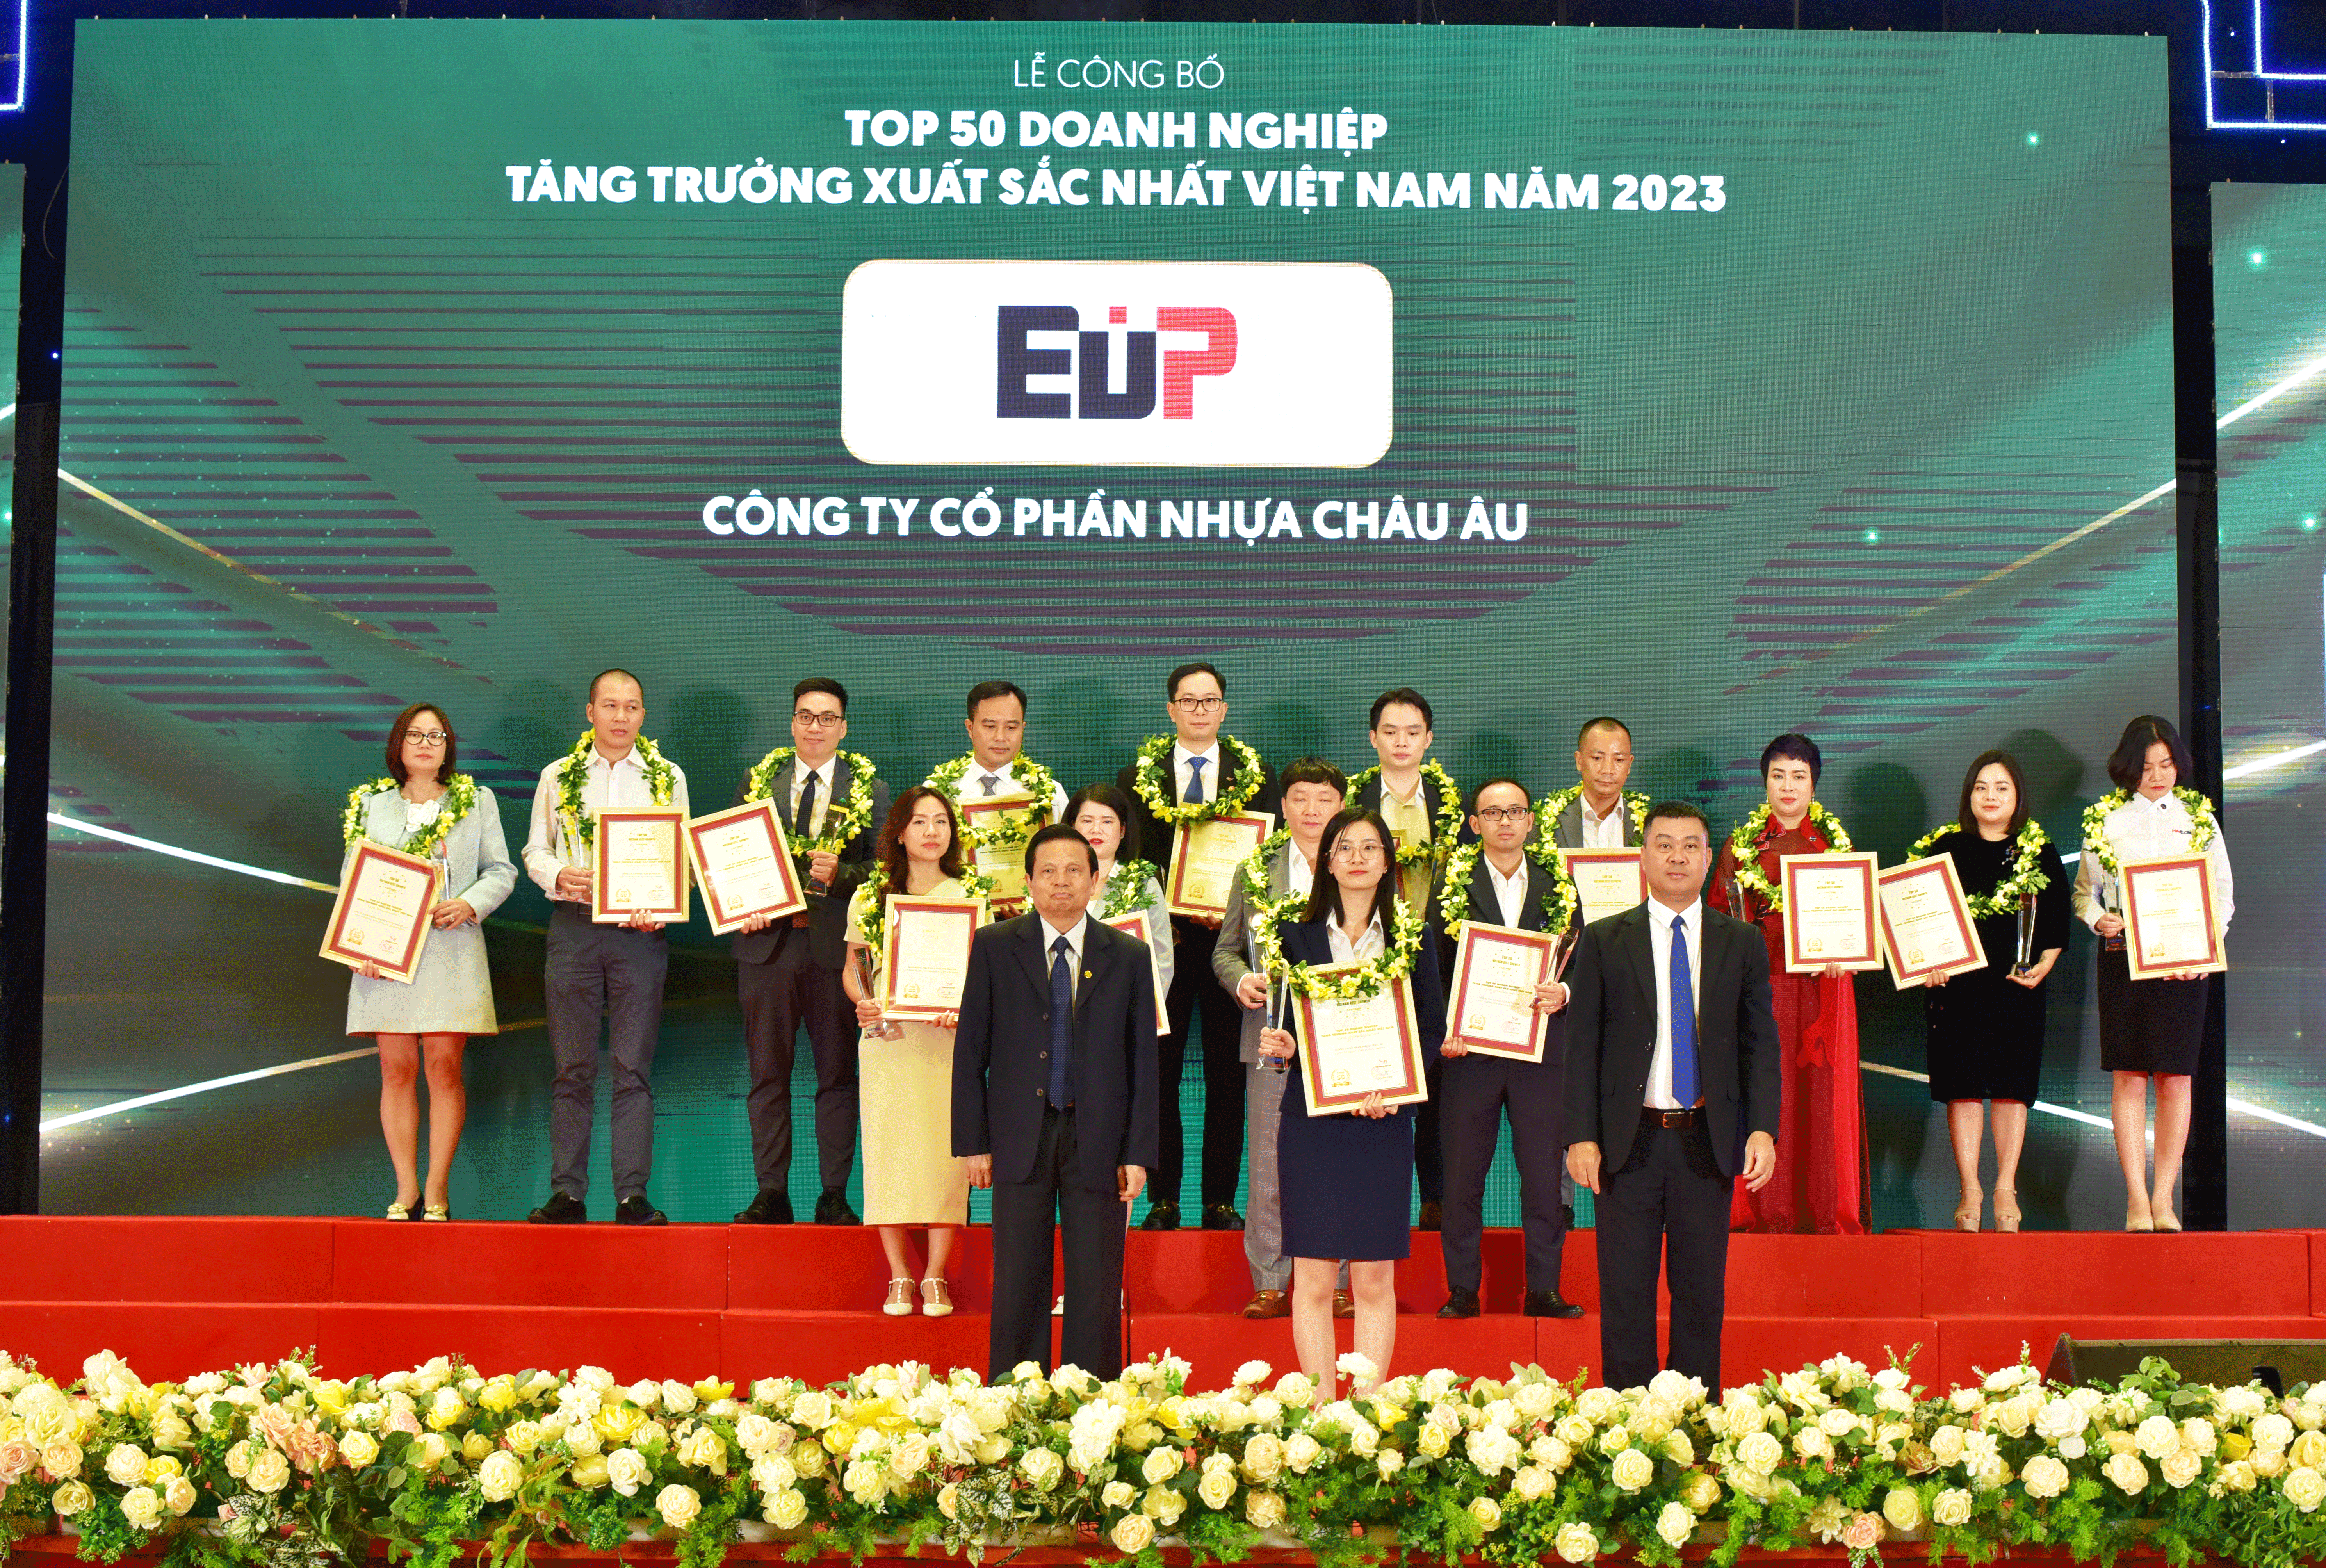 EuP cũng vinh dự khi là một trong 50 doanh nghiệp tăng trưởng xuất sắc nhất Việt Nam